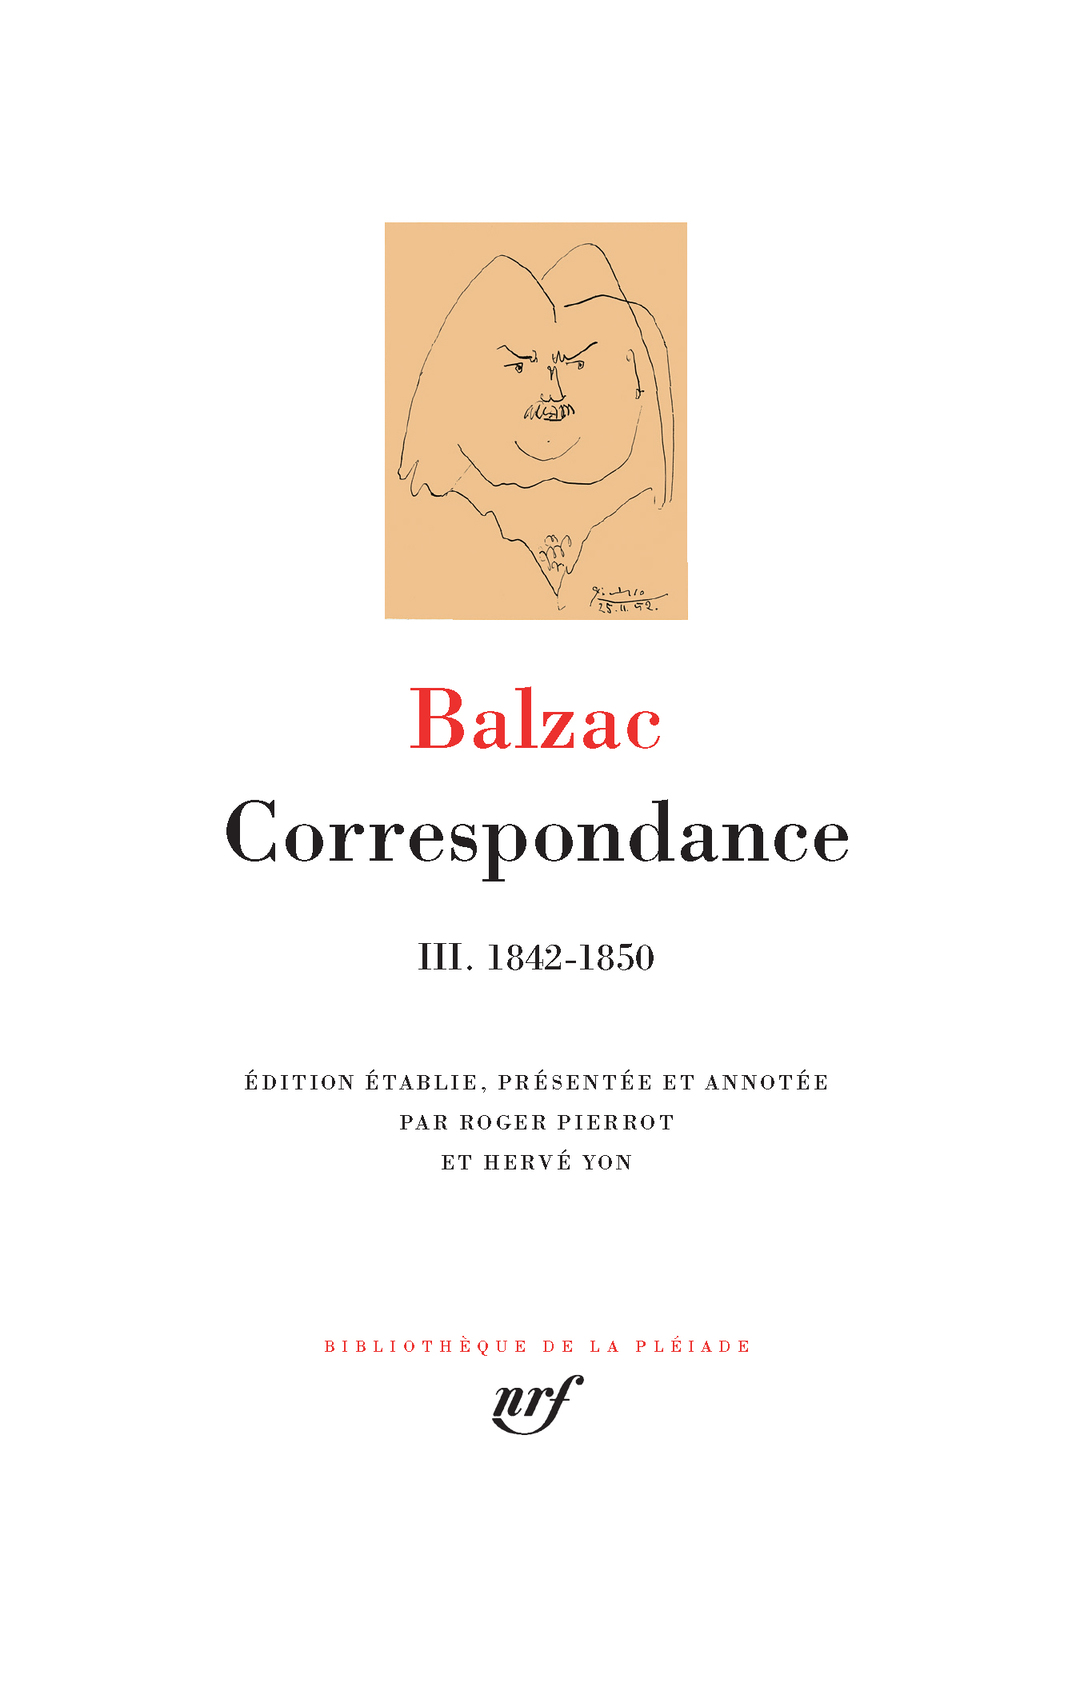 Balzac, Correspondance, t. III 1842-1850 (Biblioth. de la Pléiade)